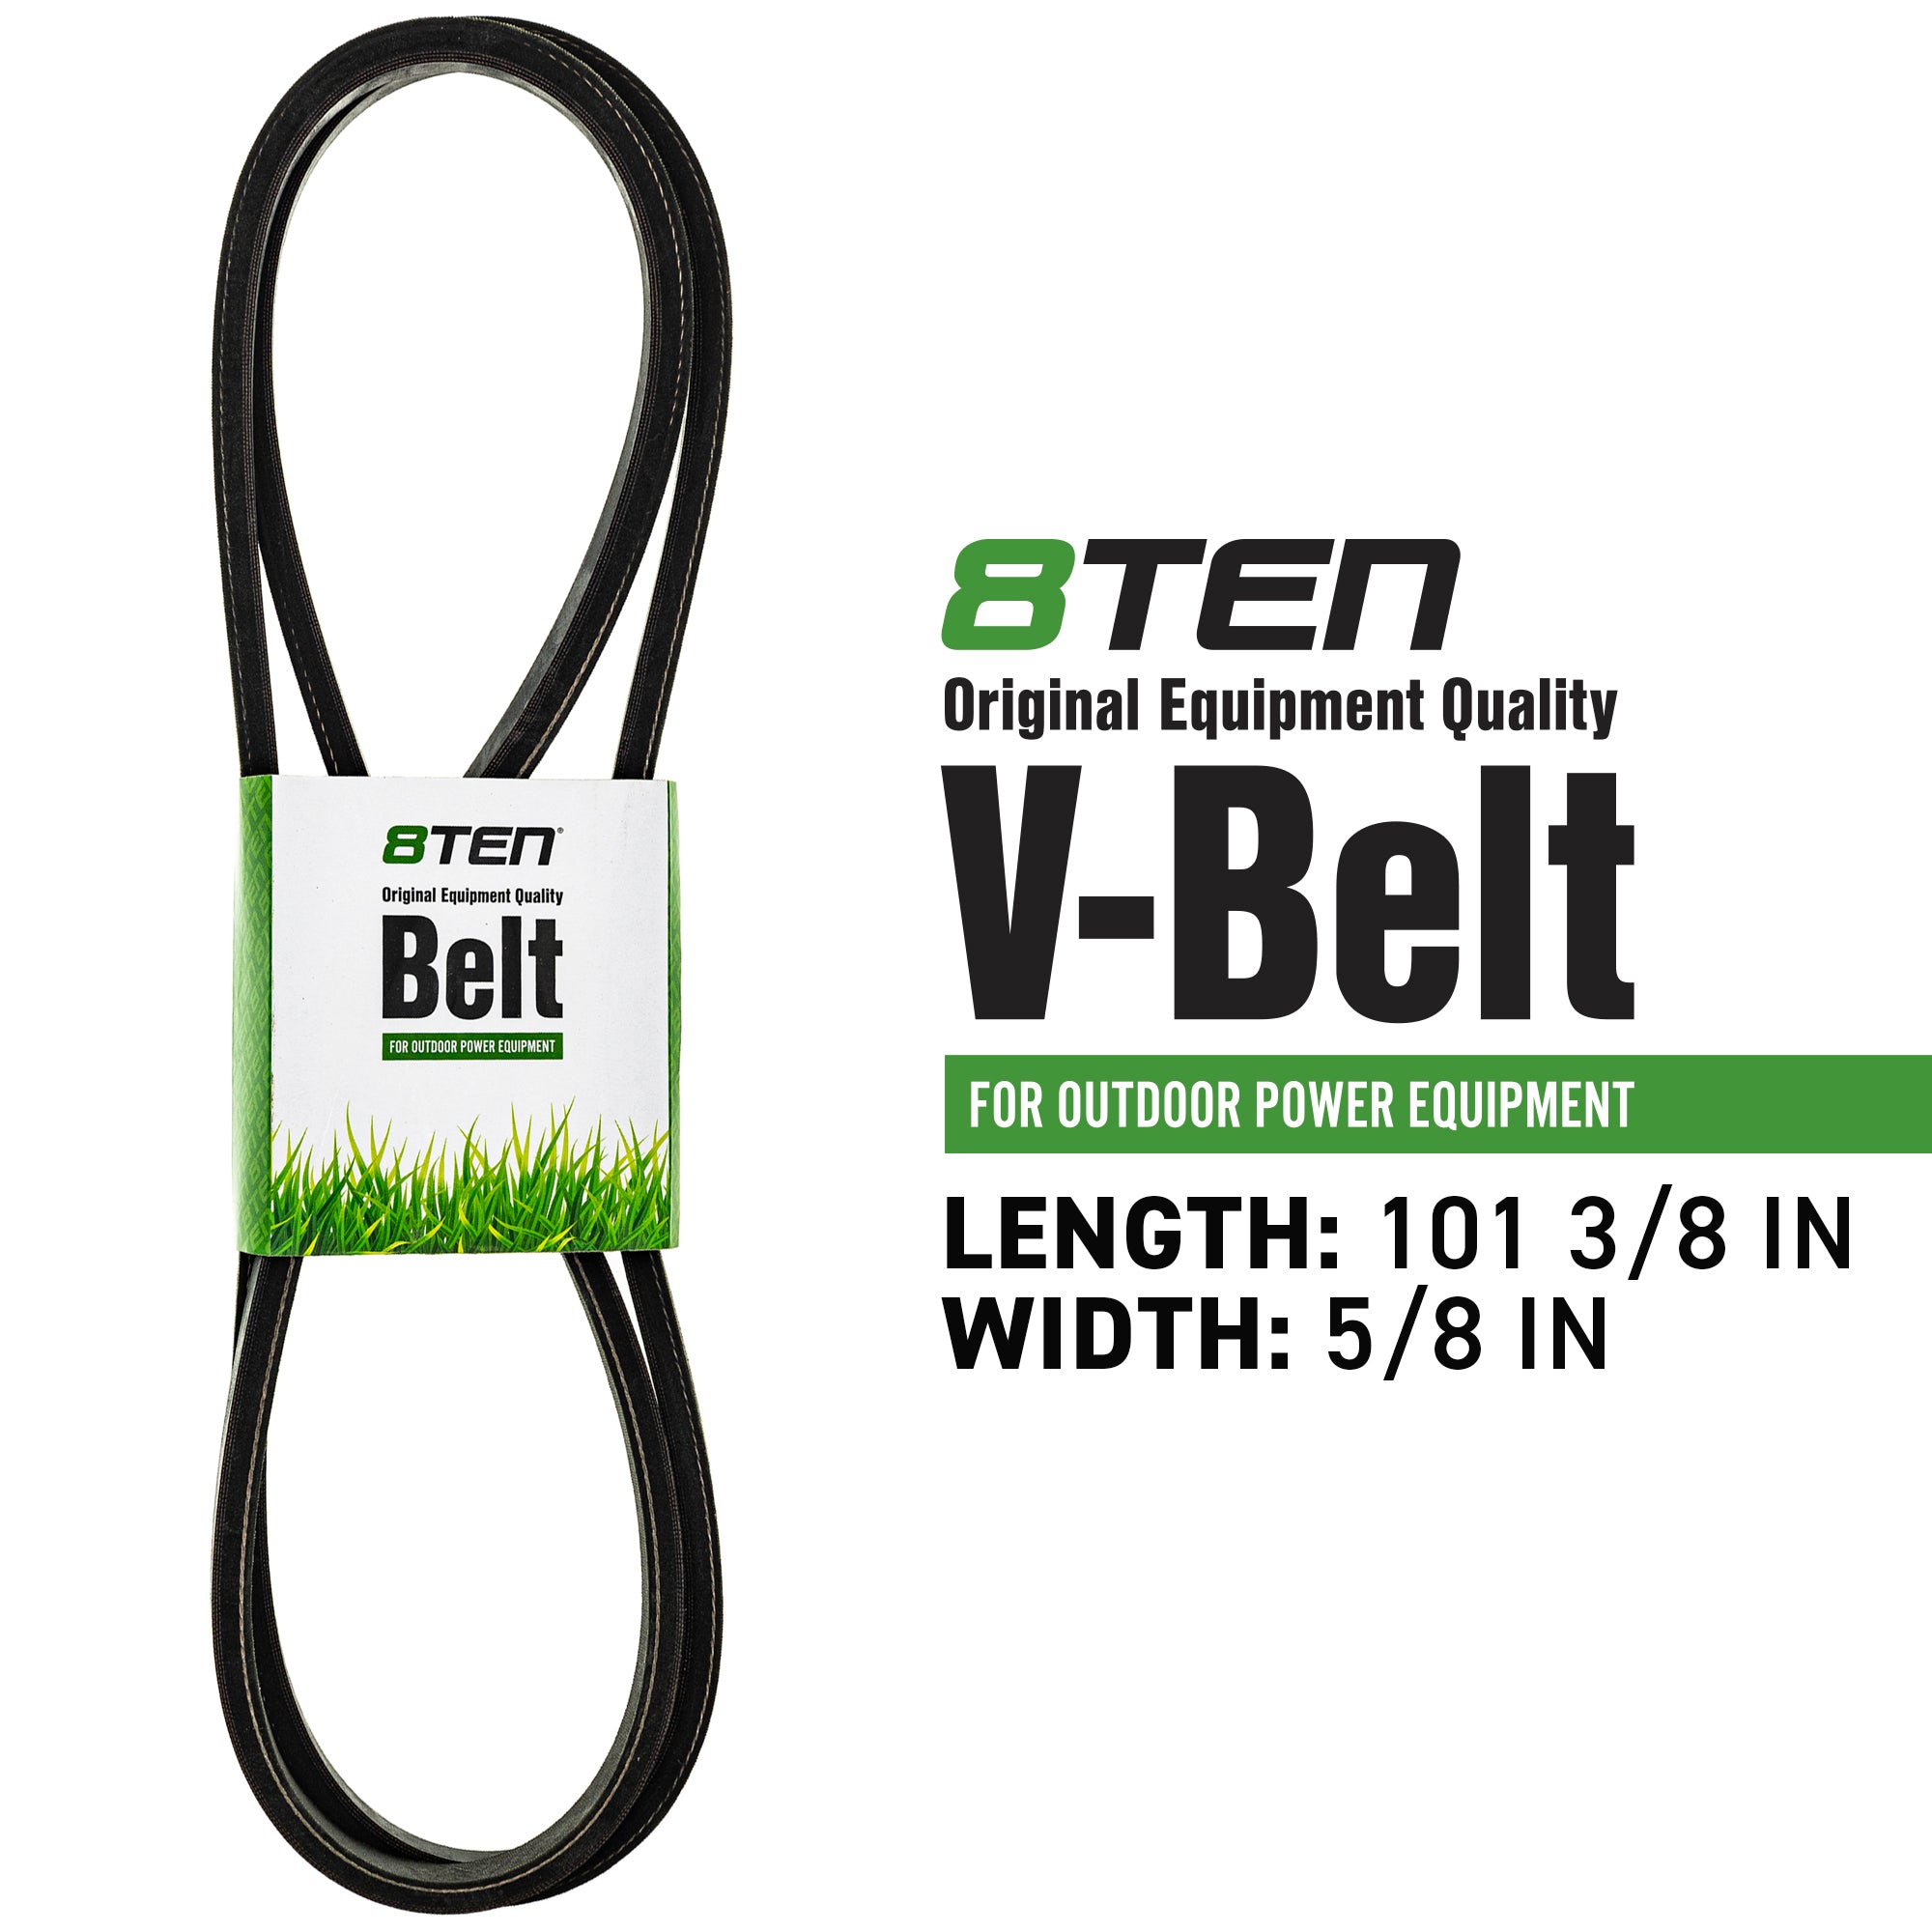 Blade Spindle Belt Idler Kit for Exmark Turf Tracer 103-8075 1-613098 52-Inch